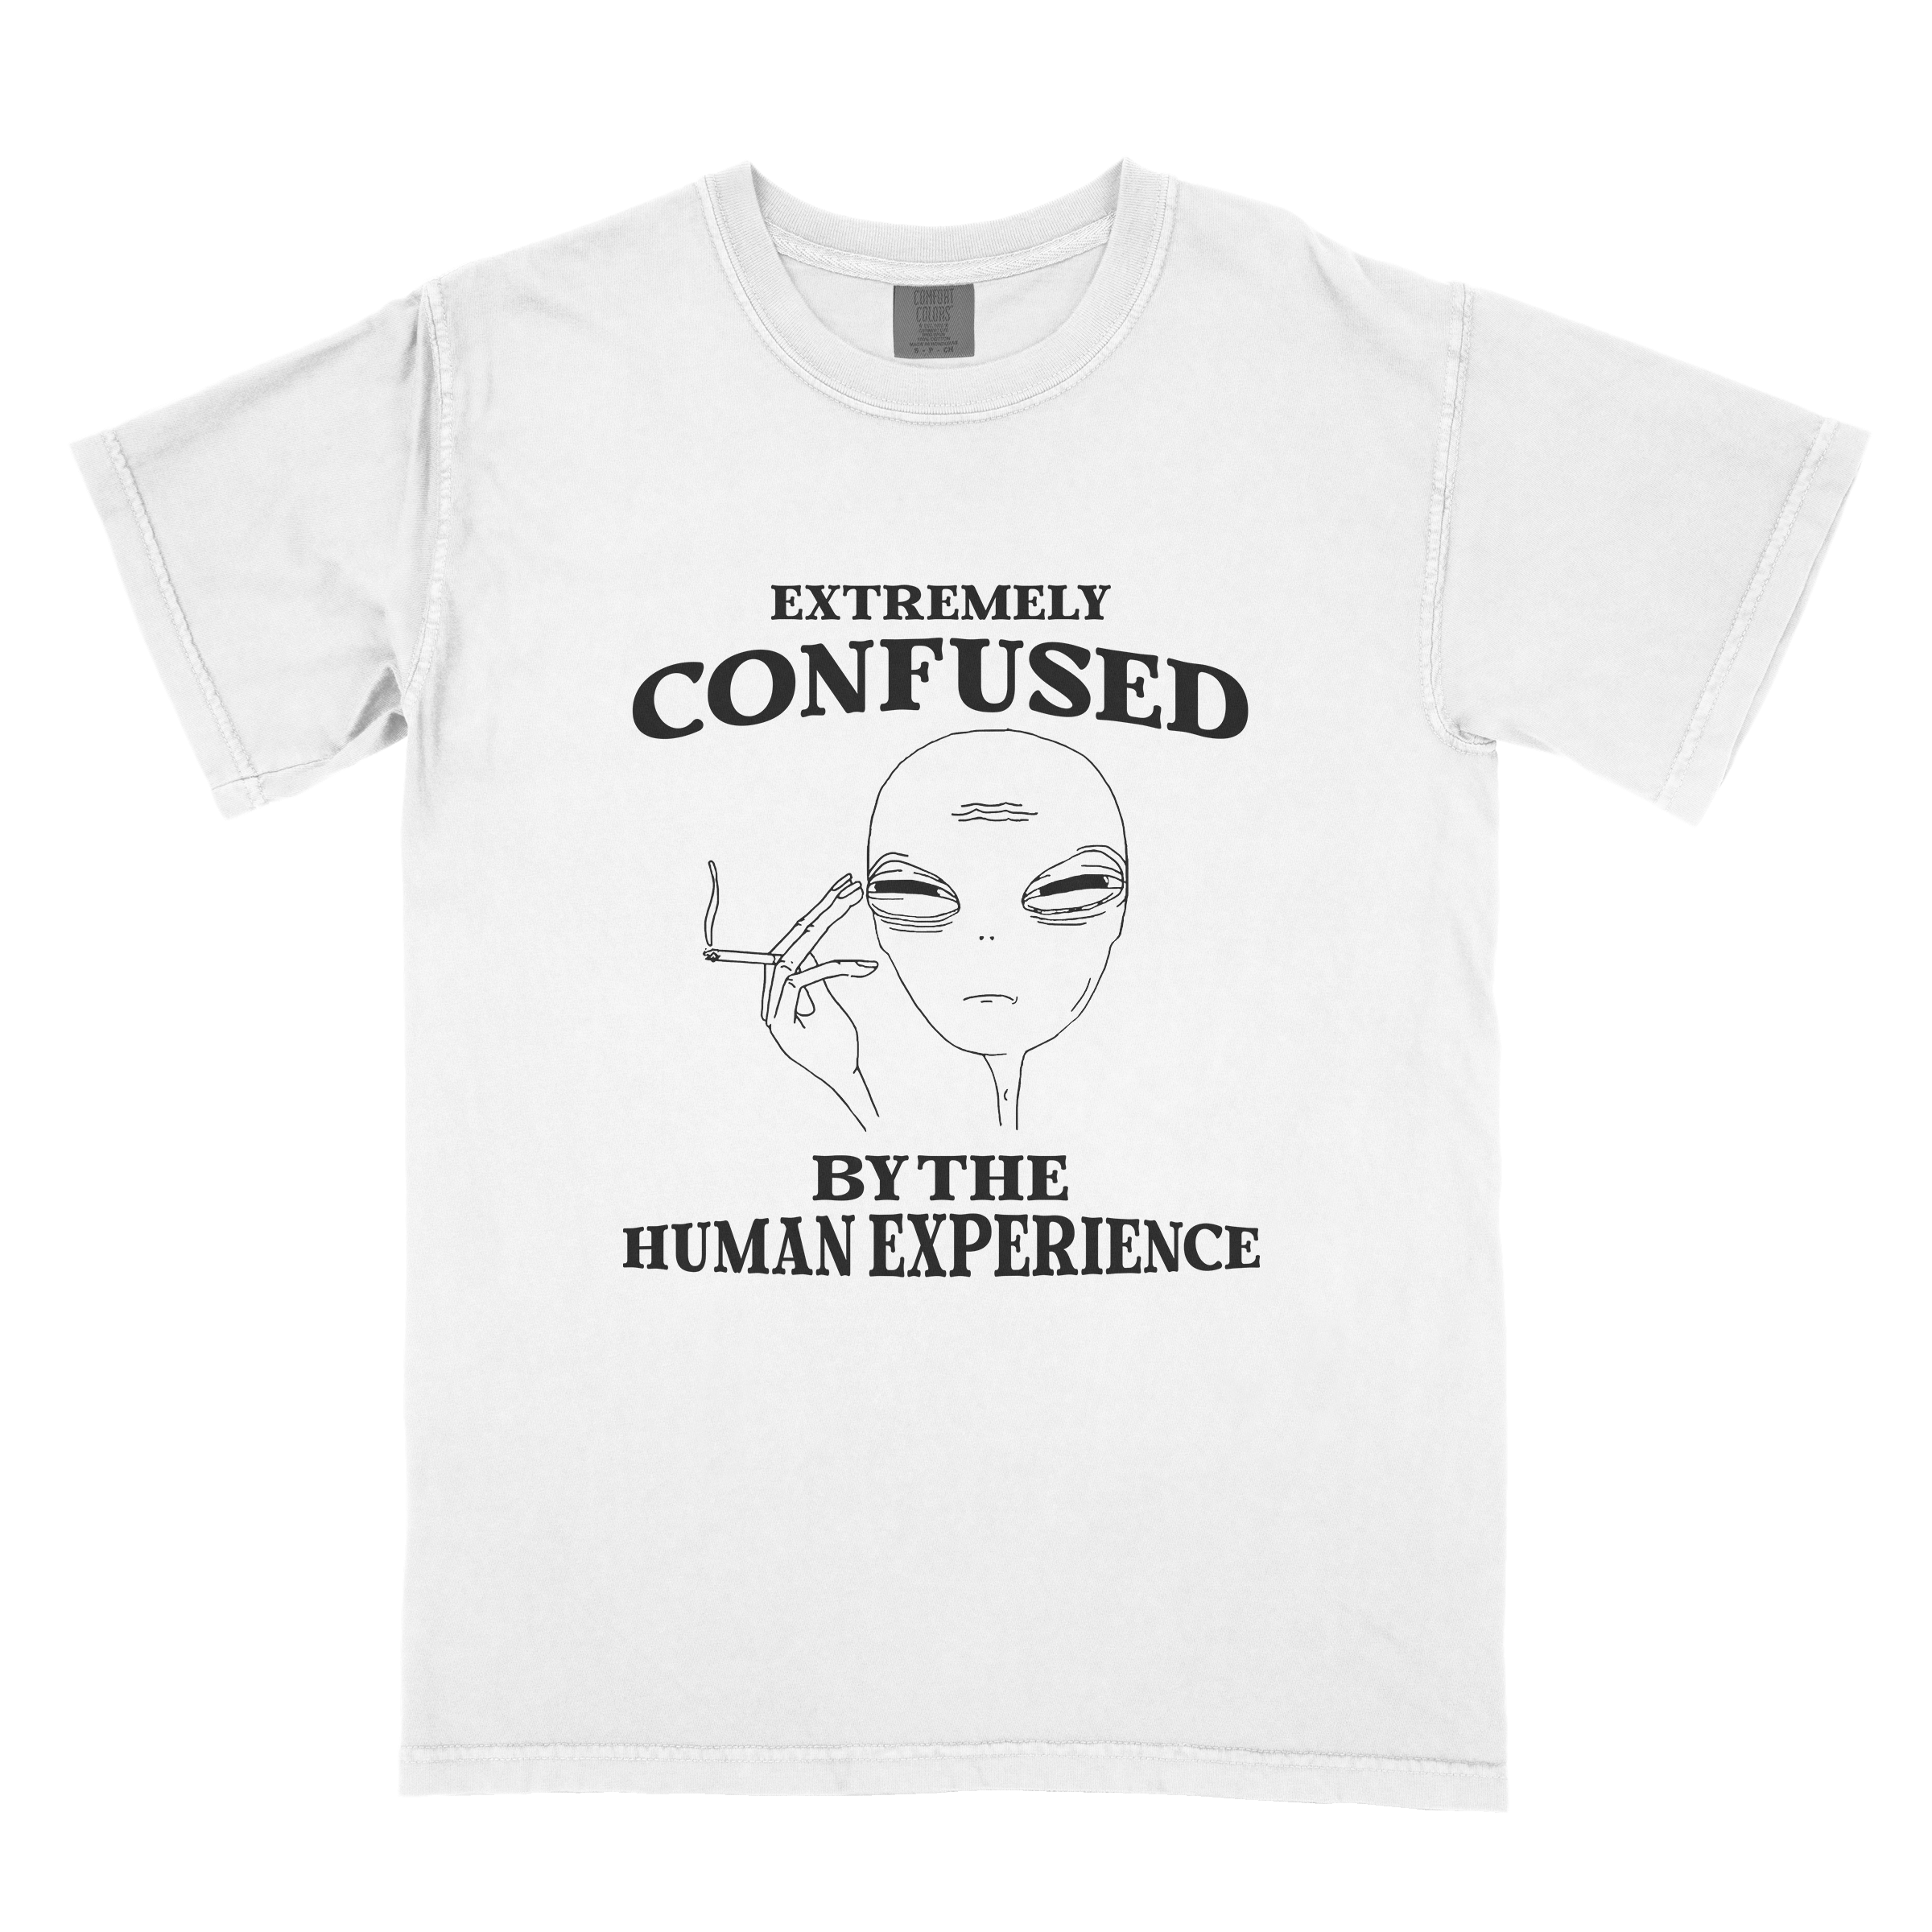 Squishhaus: Cute and humorous graphic t-shirts.